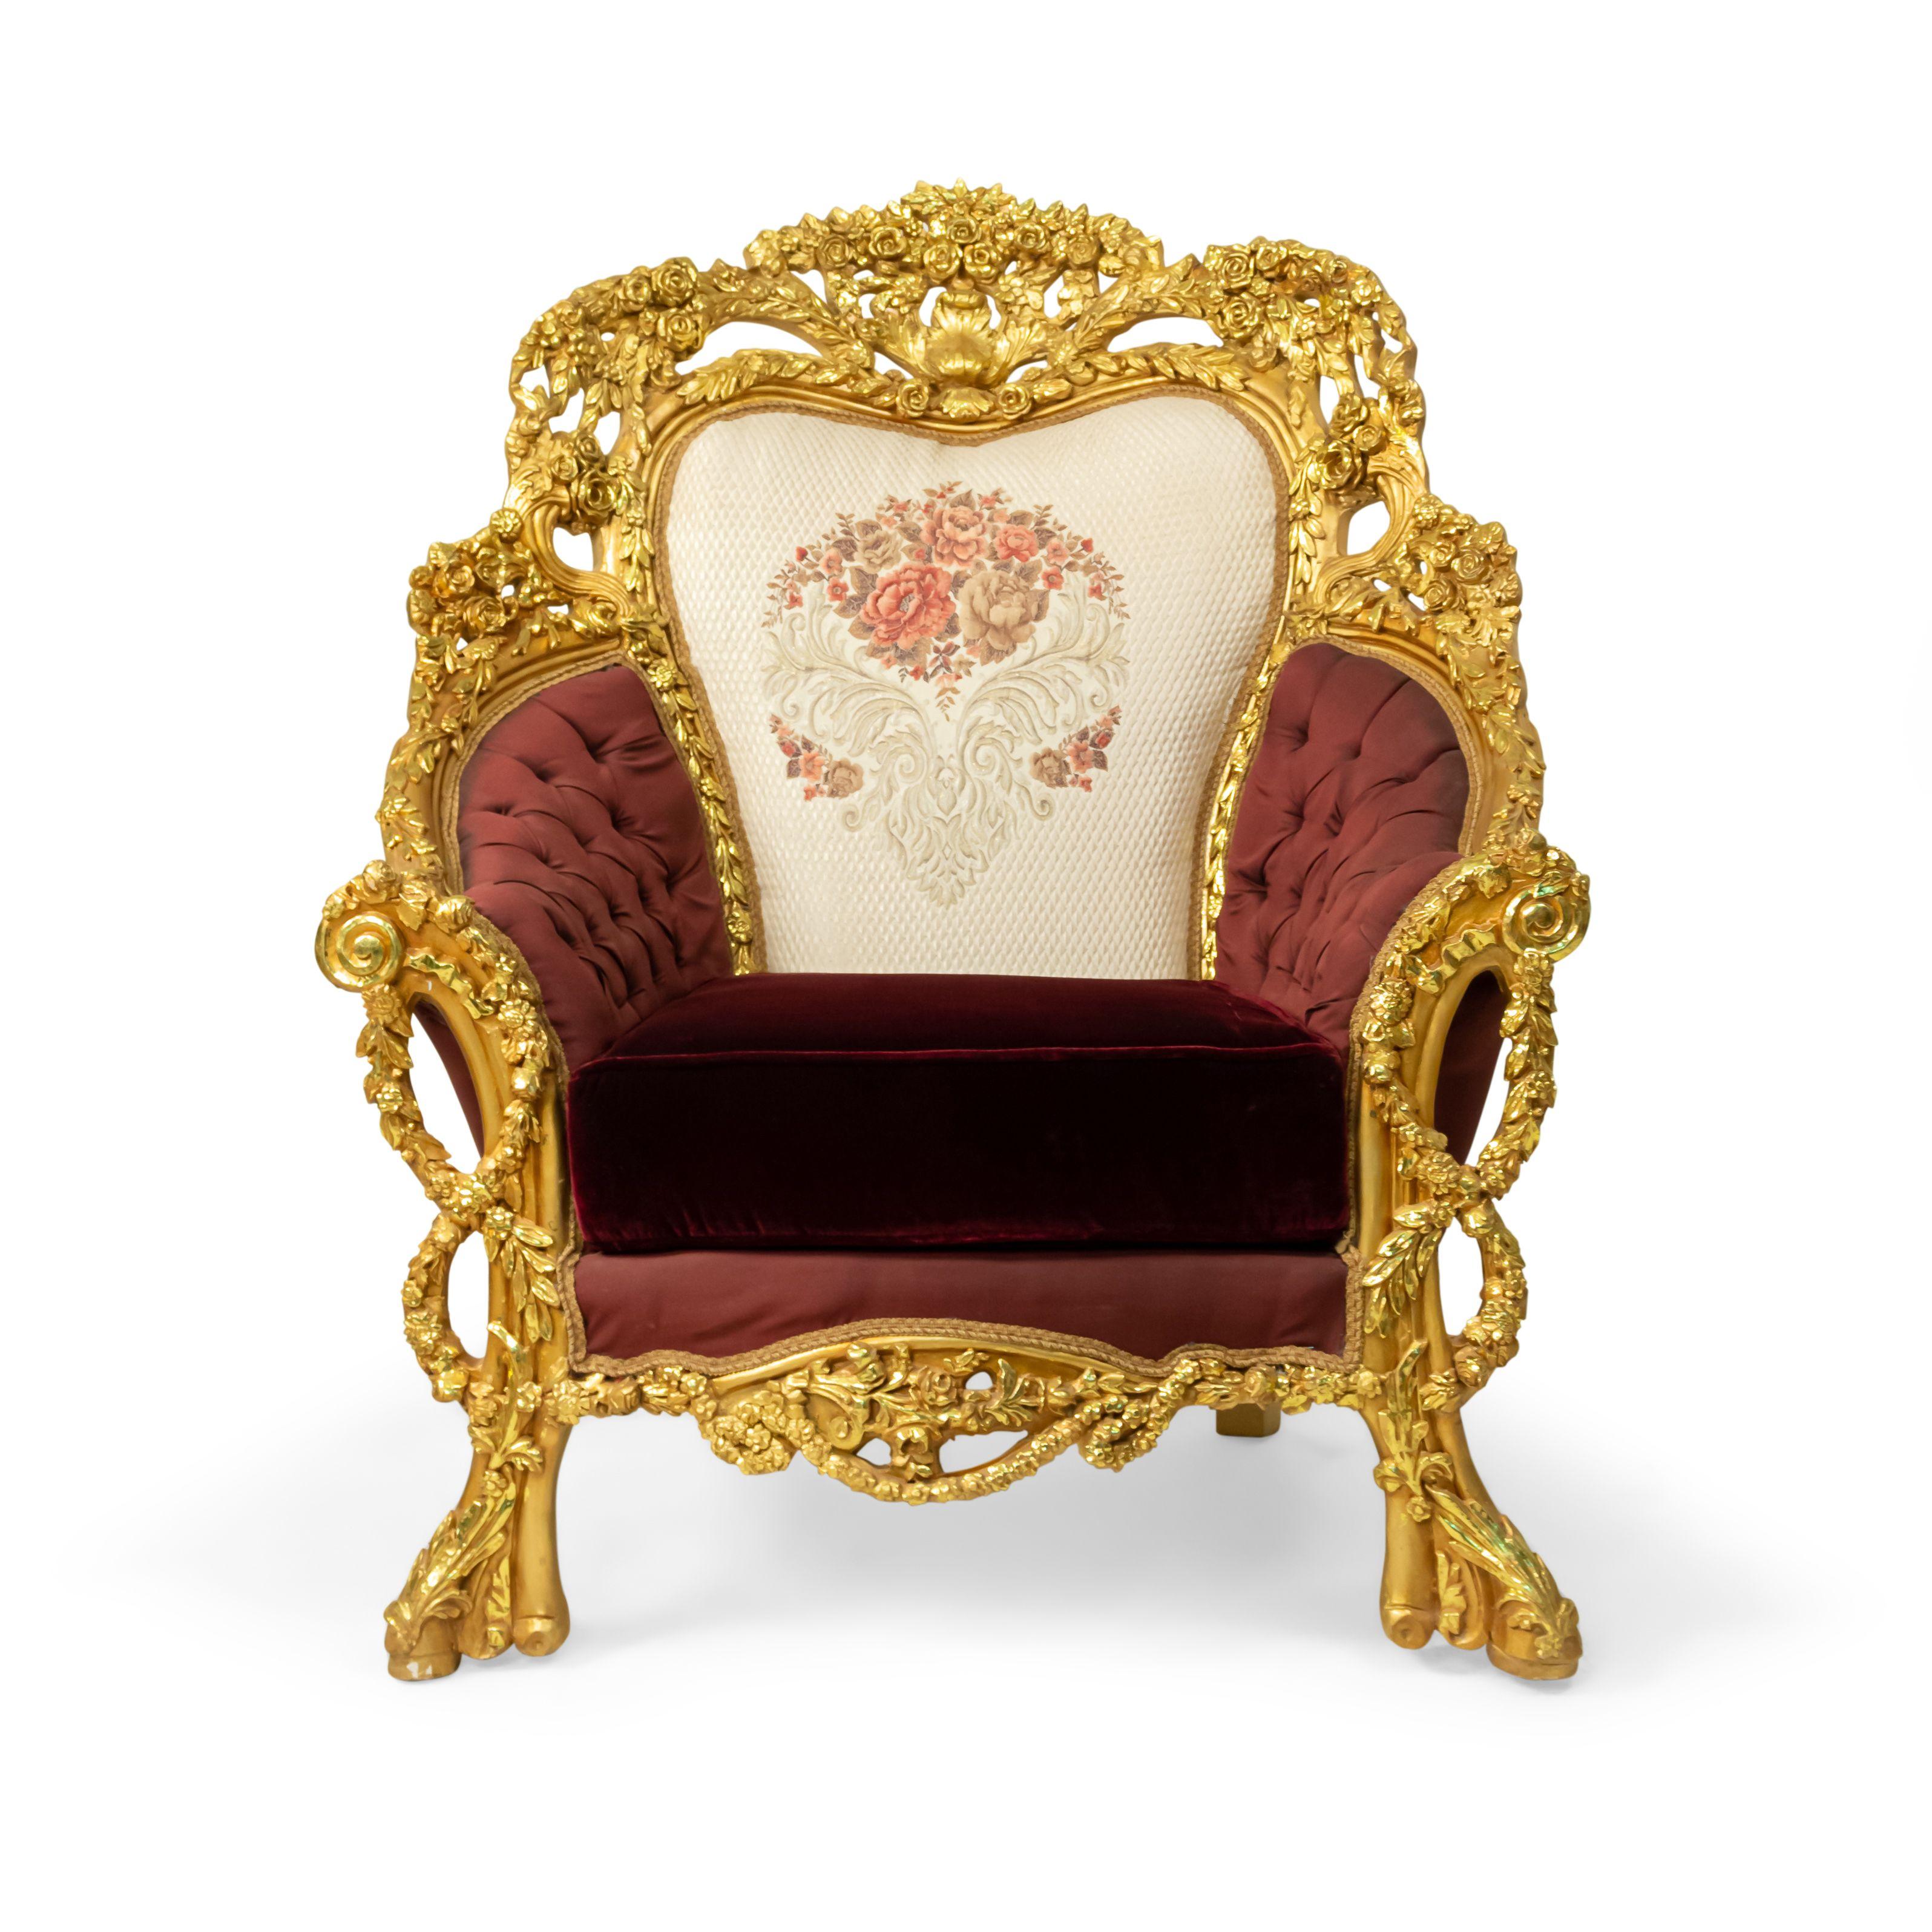 Paar italienische Sessel im Barockstil des 20. Jahrhunderts mit filigranen Rahmen aus Goldholz, weinroten und cremefarbenen Polstern mit Knöpfen und gestickten Blumen sowie weinroten Samtkissen.